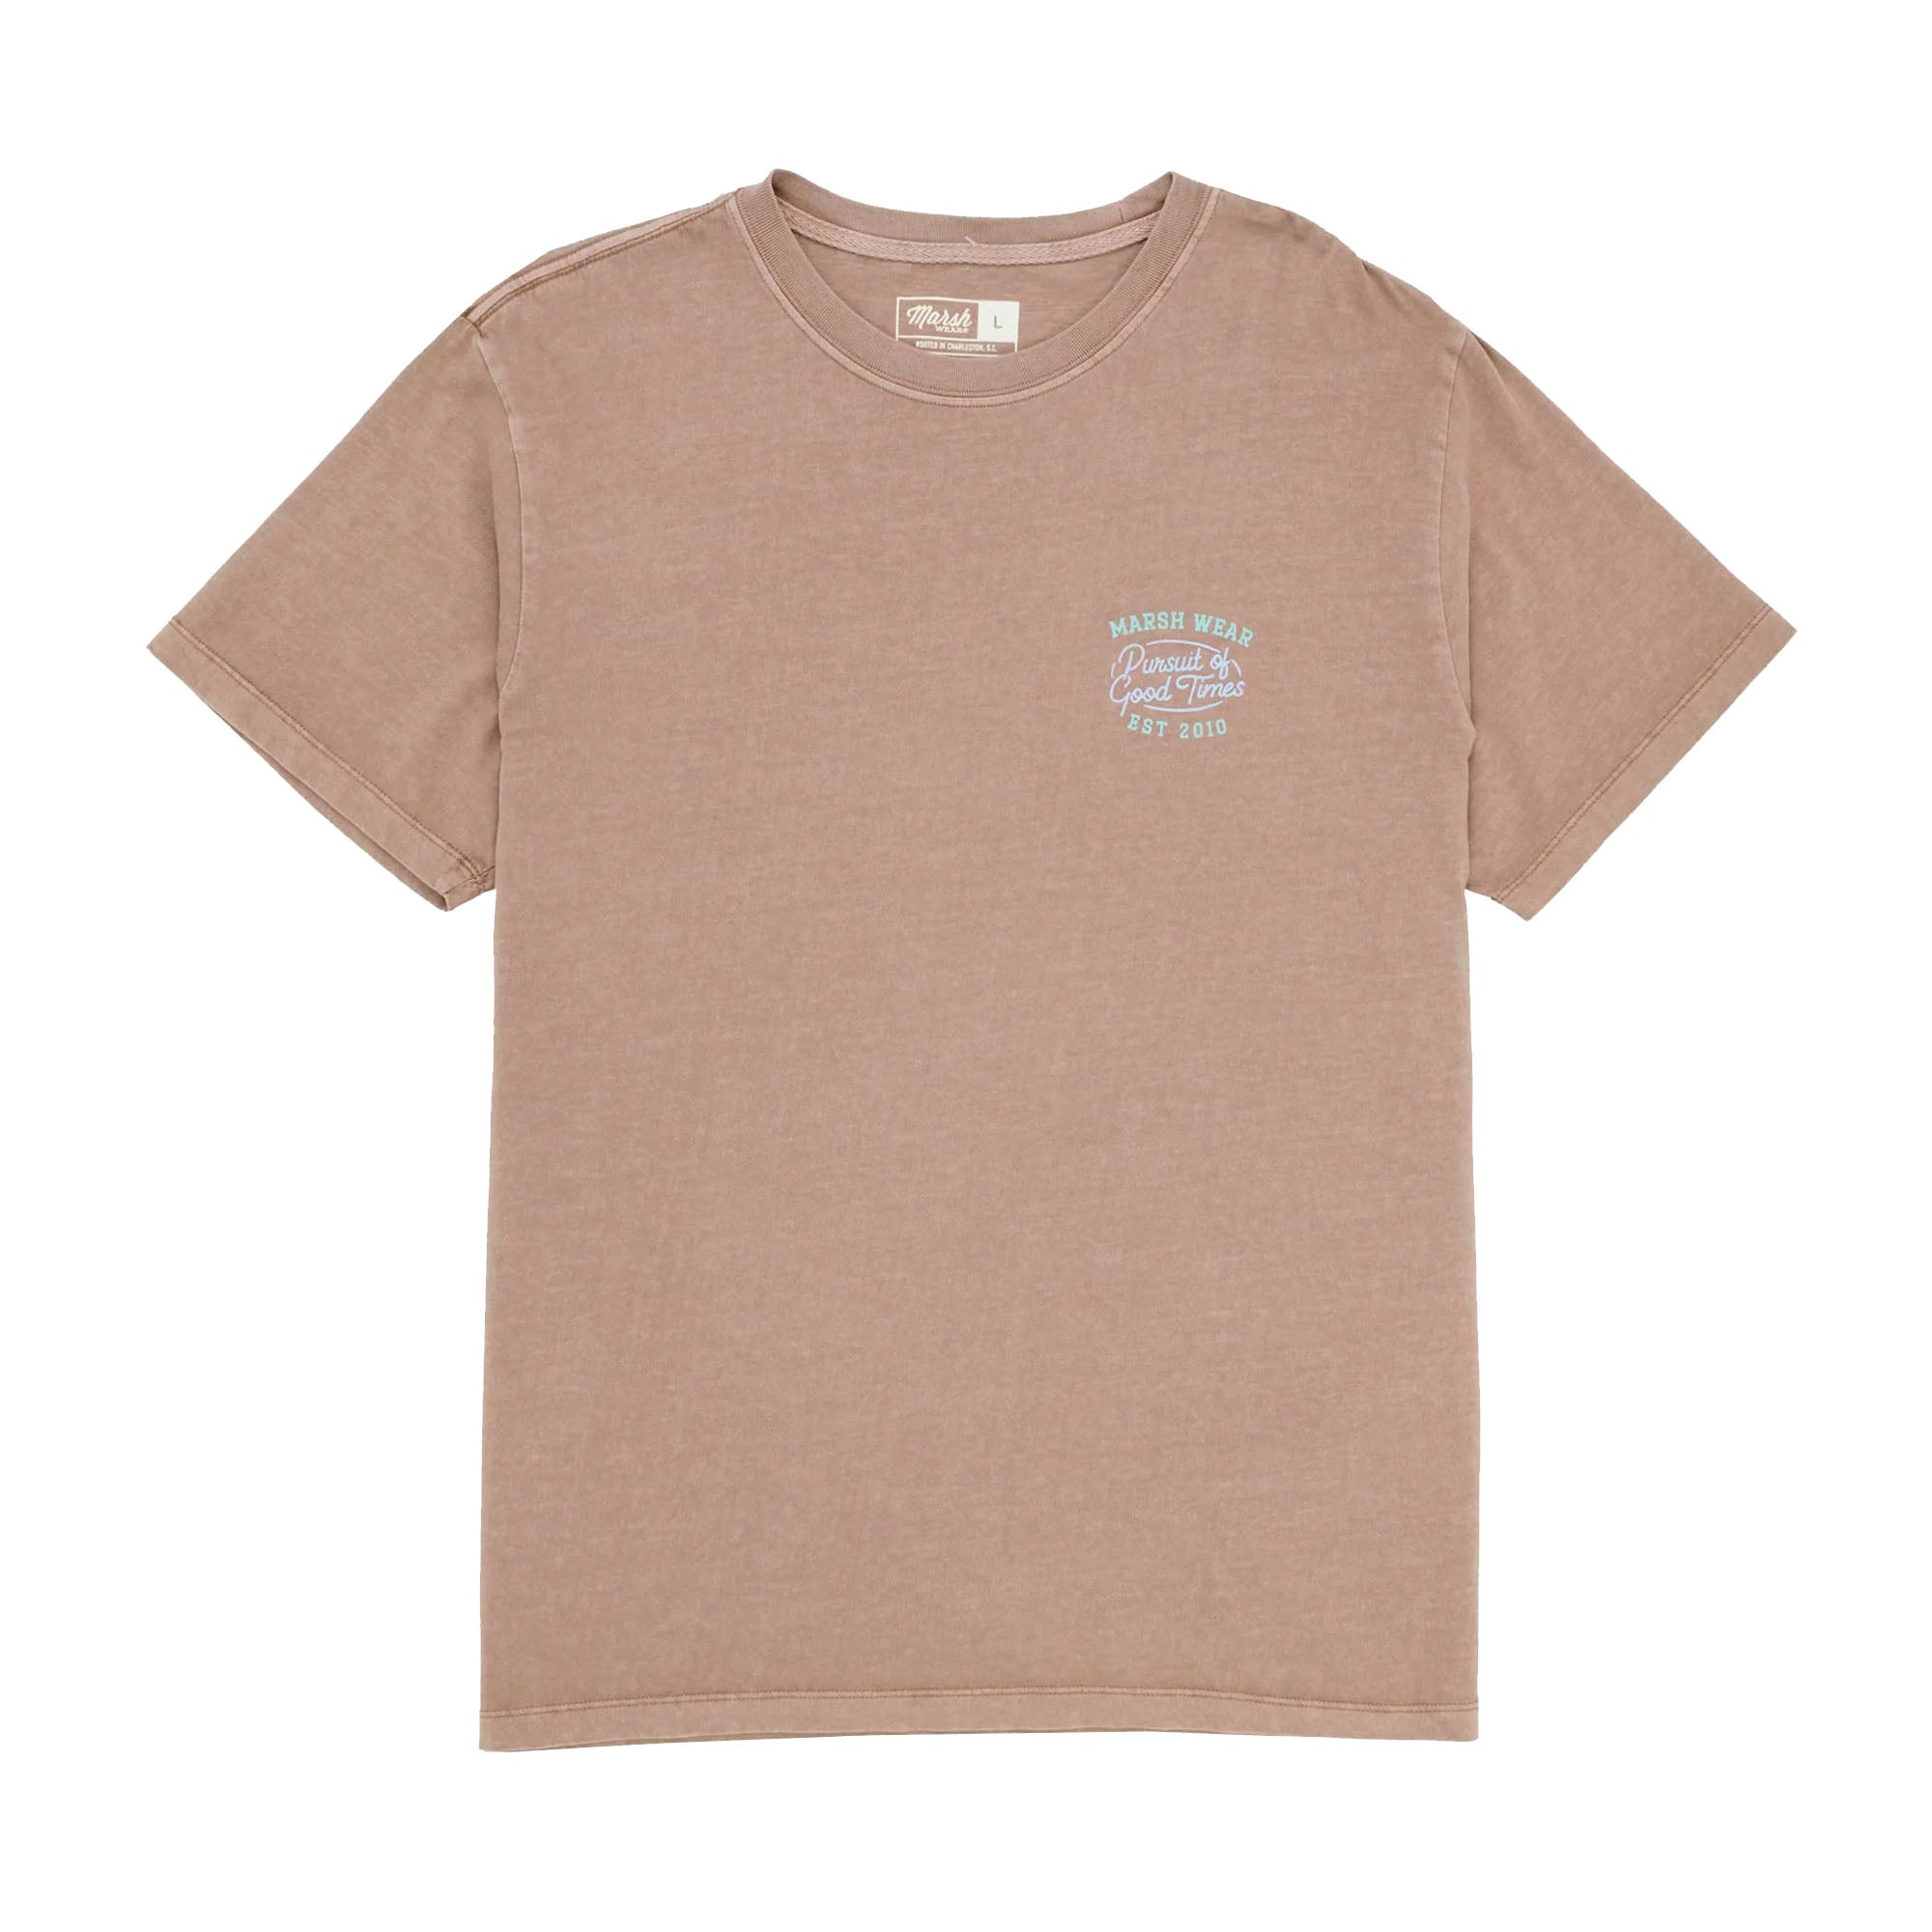 Marsh Wear Pursuit Men's S/S T-Shirt